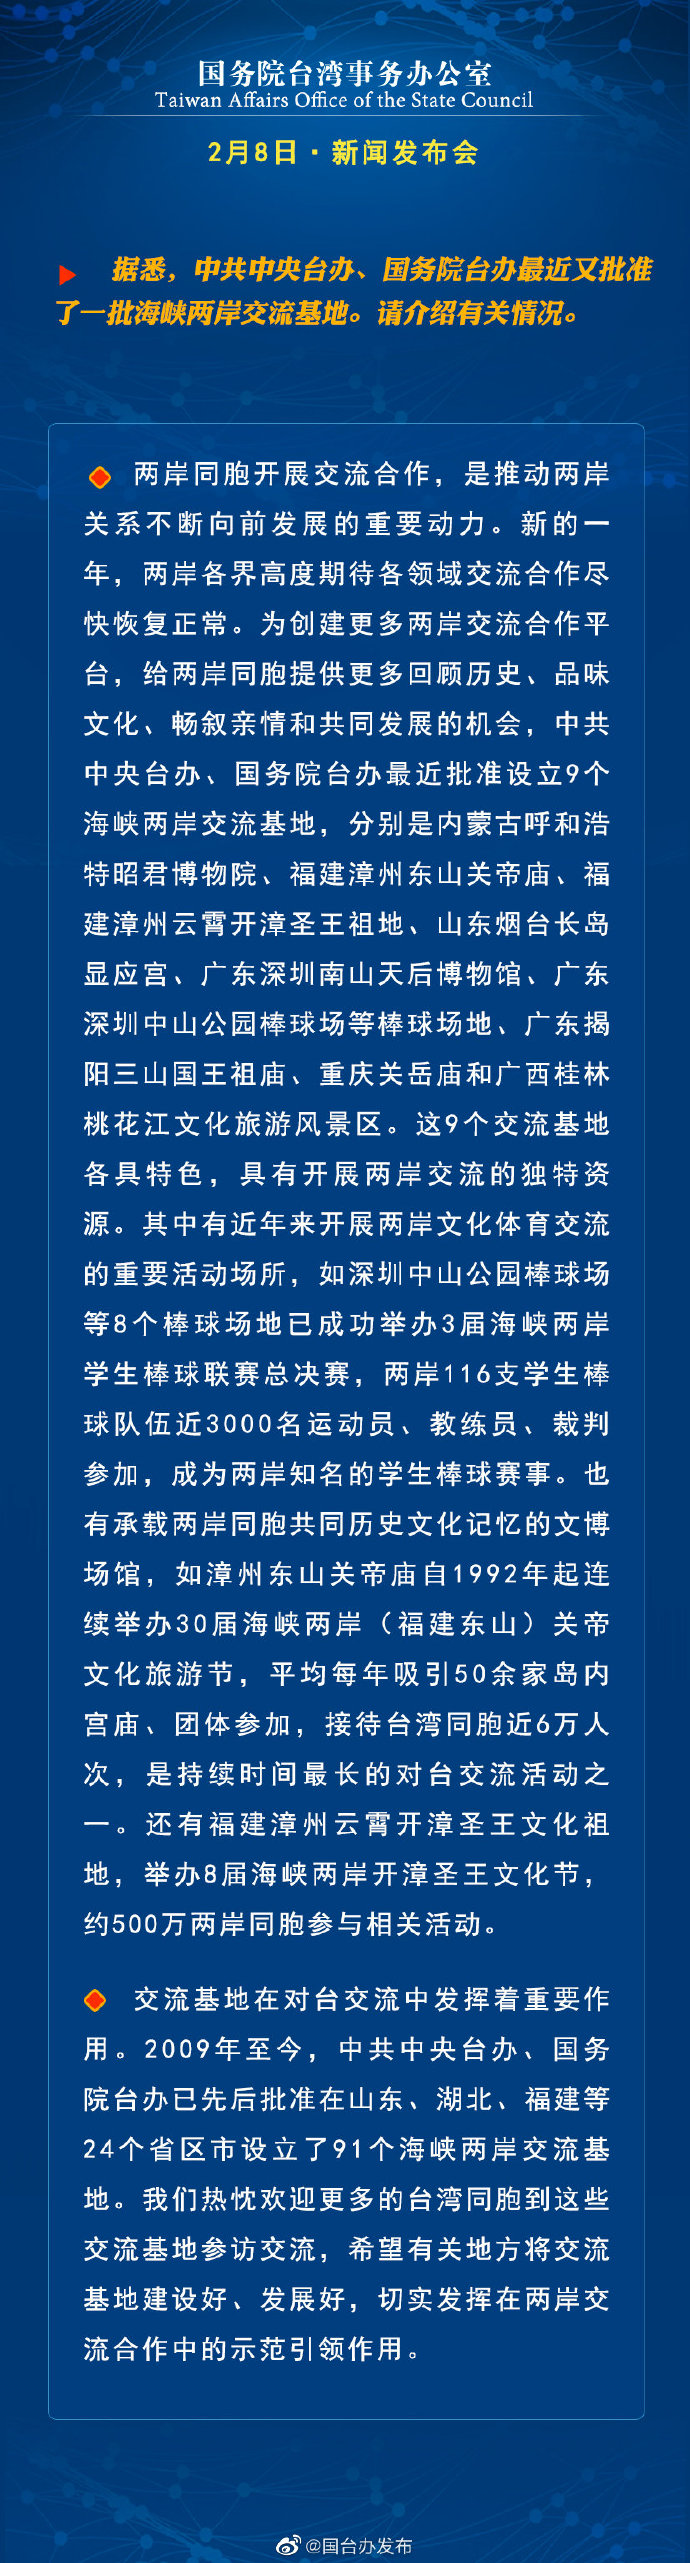 國務院台灣事務辦公室2月8日·新聞發佈會